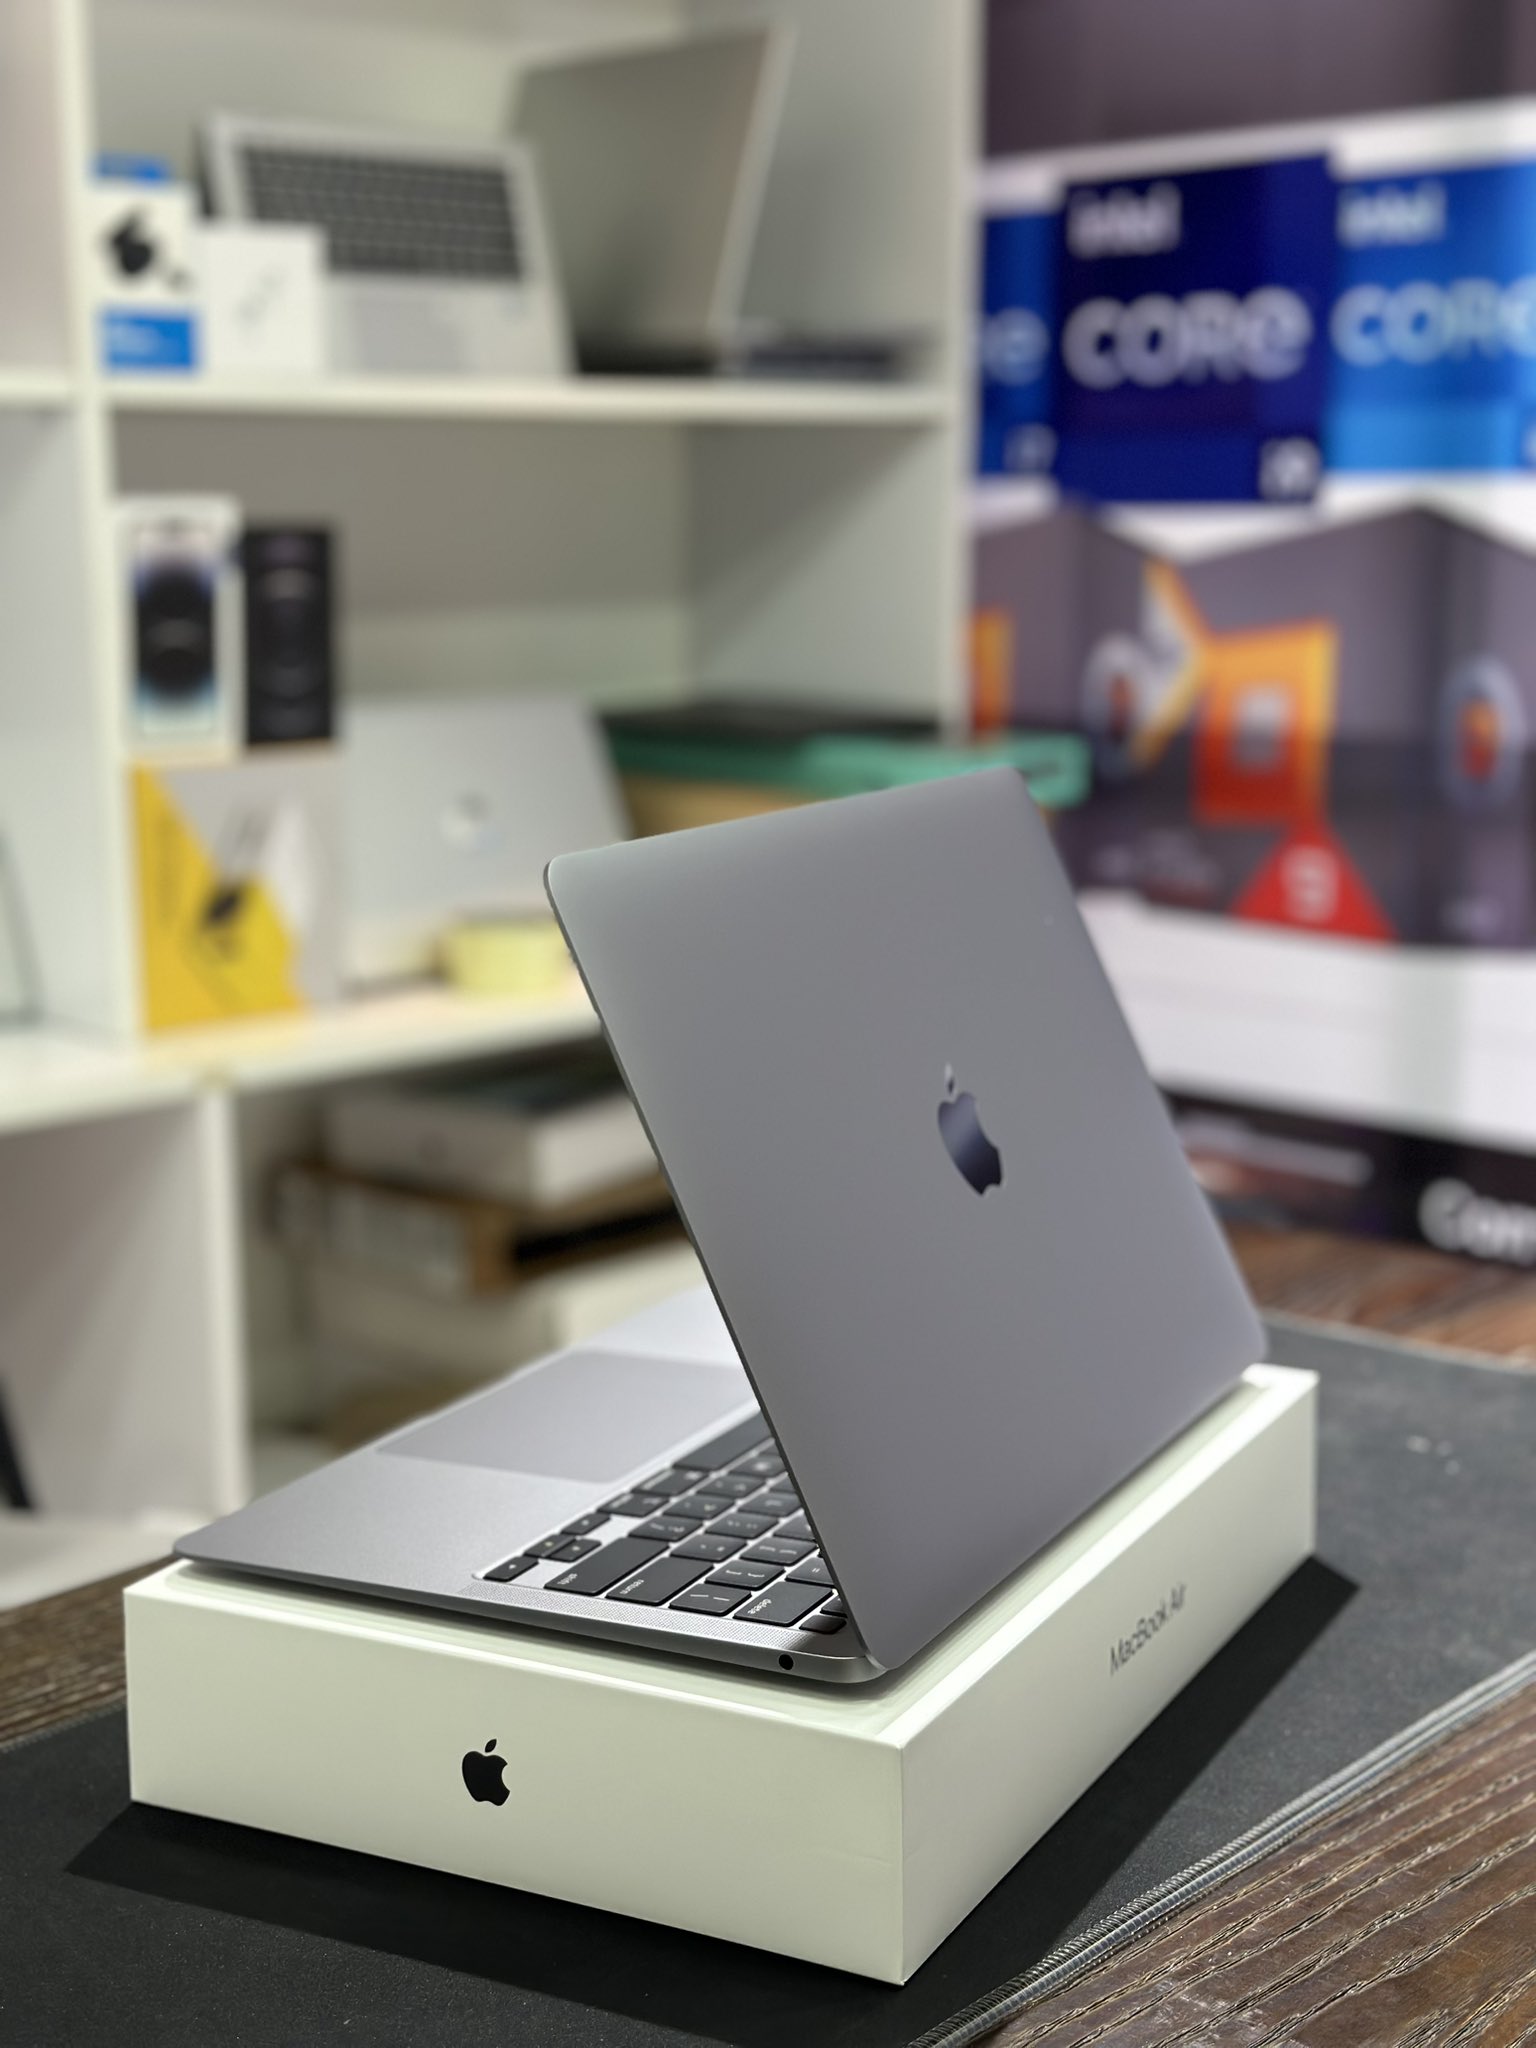 Harga Turun Drastis! MacBook Air M1 Laptop Kualitas Terbaik, Harganya Jadi Segini